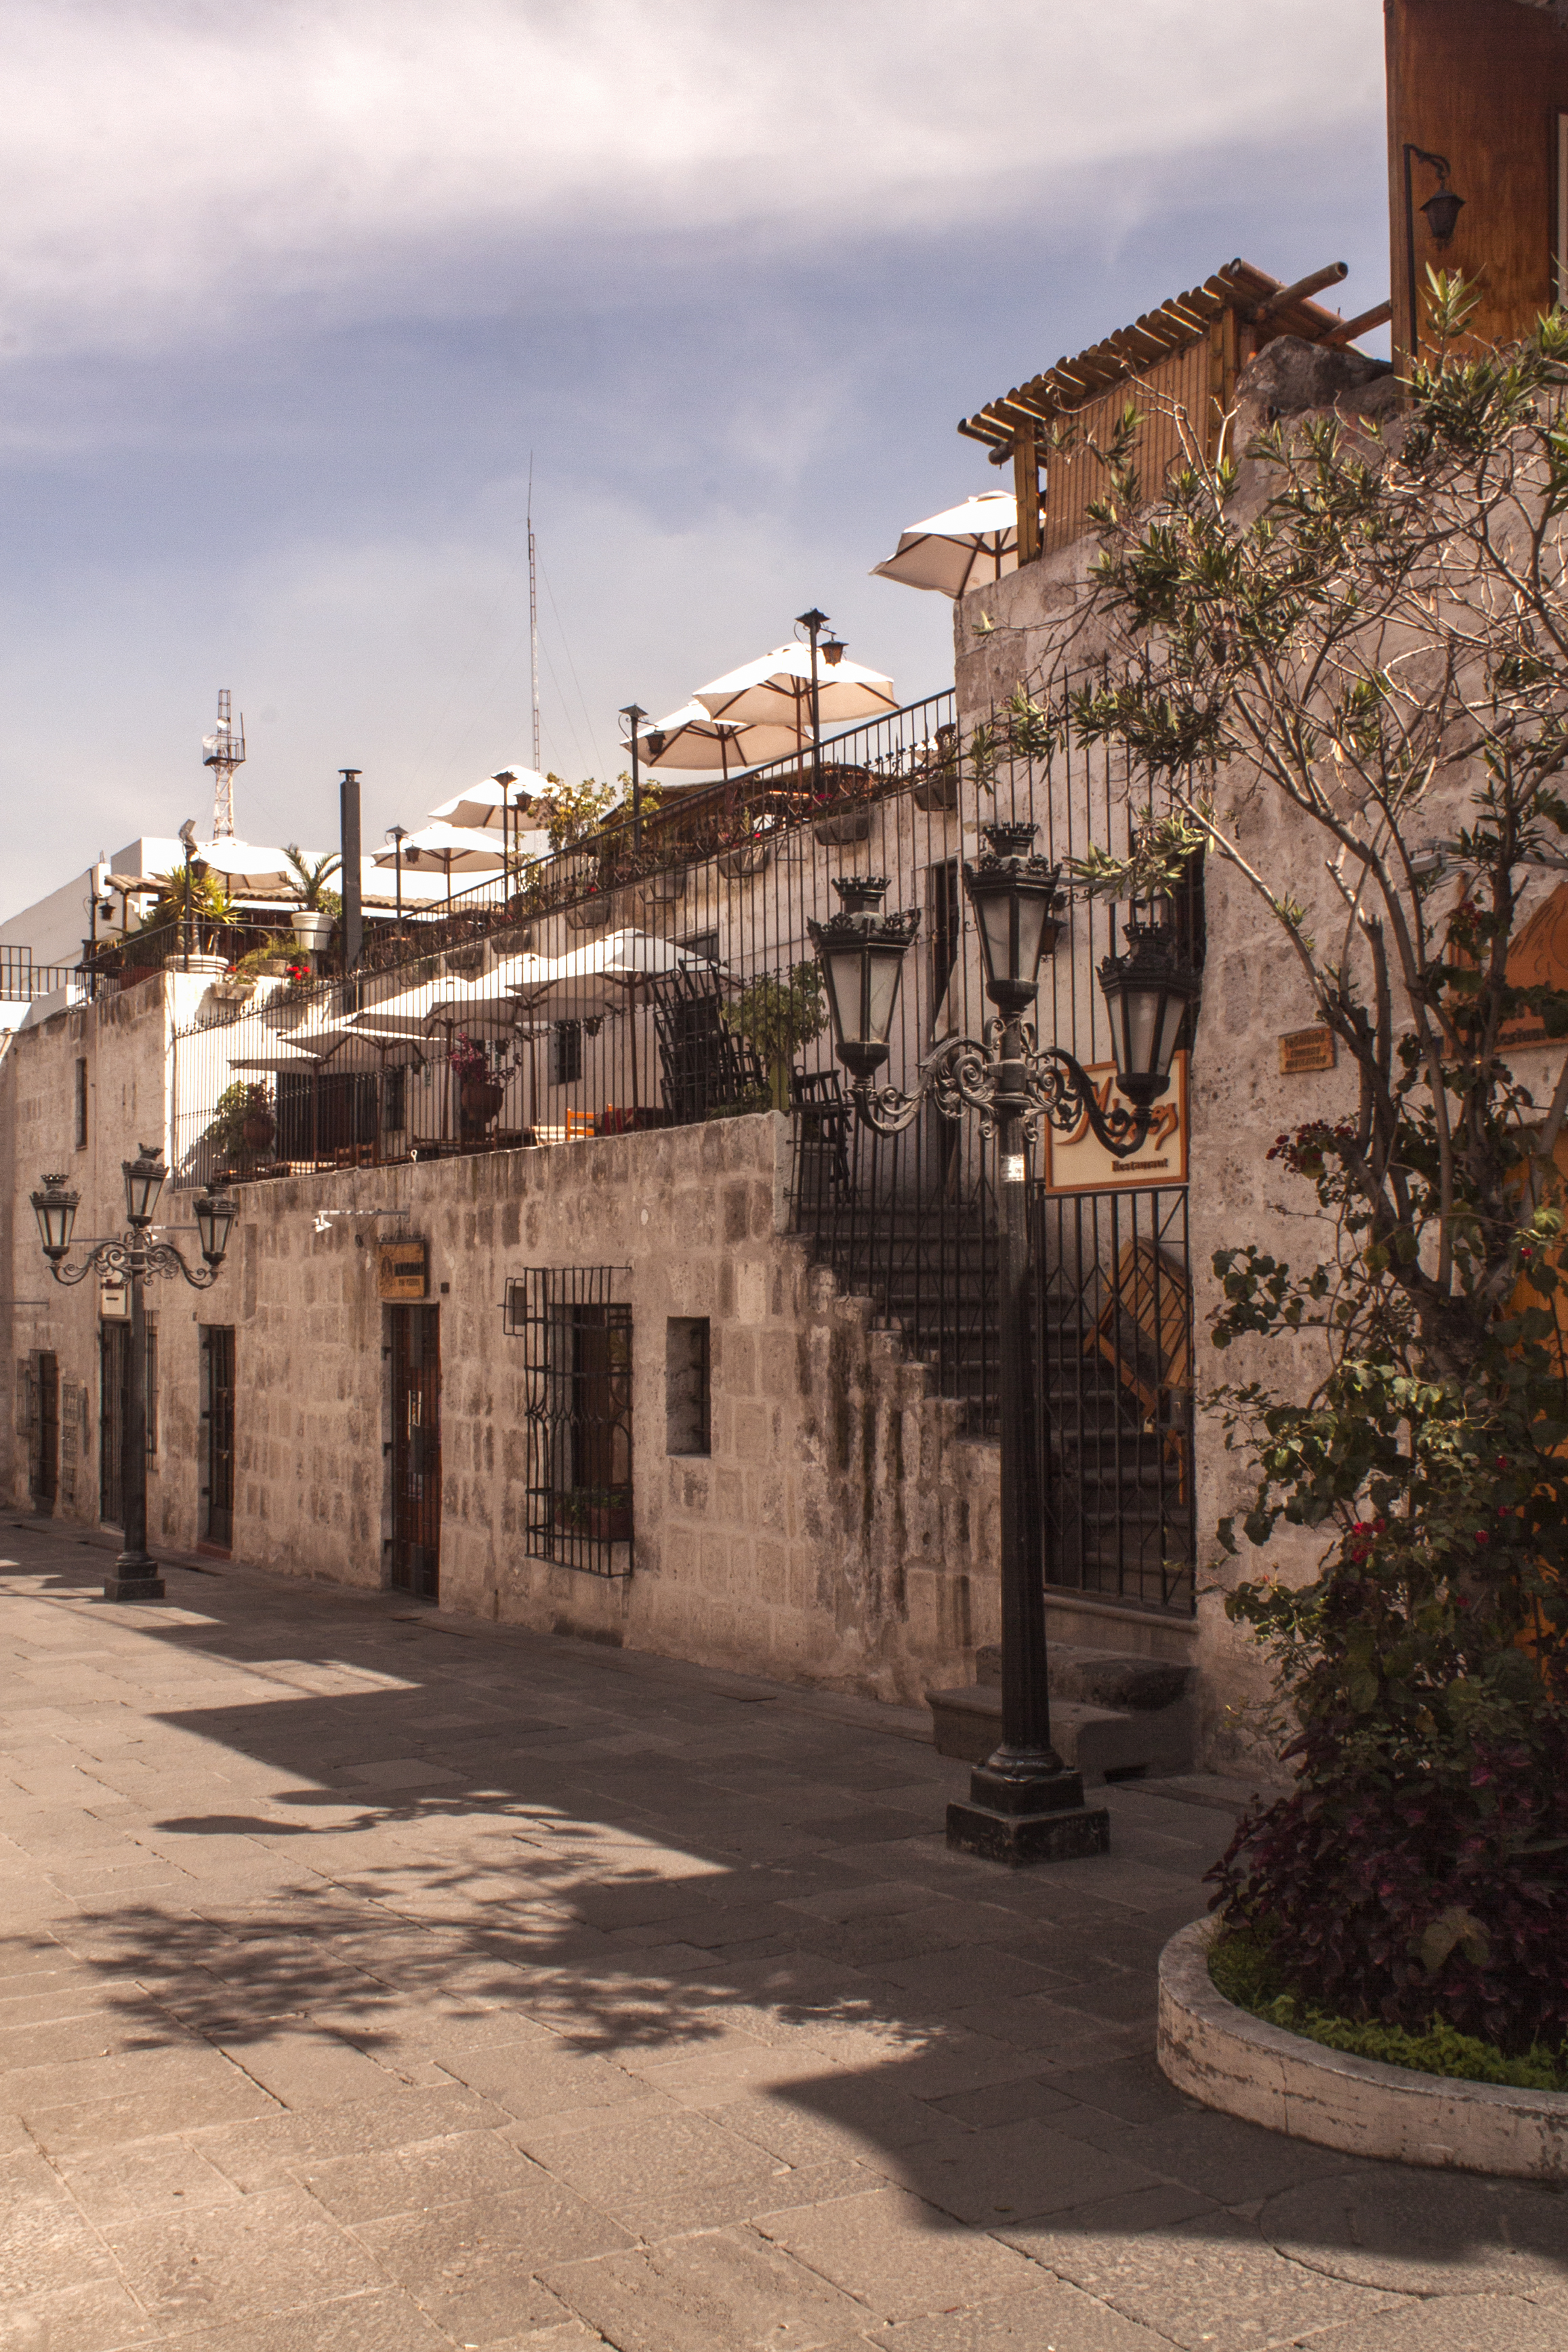 La callejuela ciudad de Arequipa, Arequipa, Perú